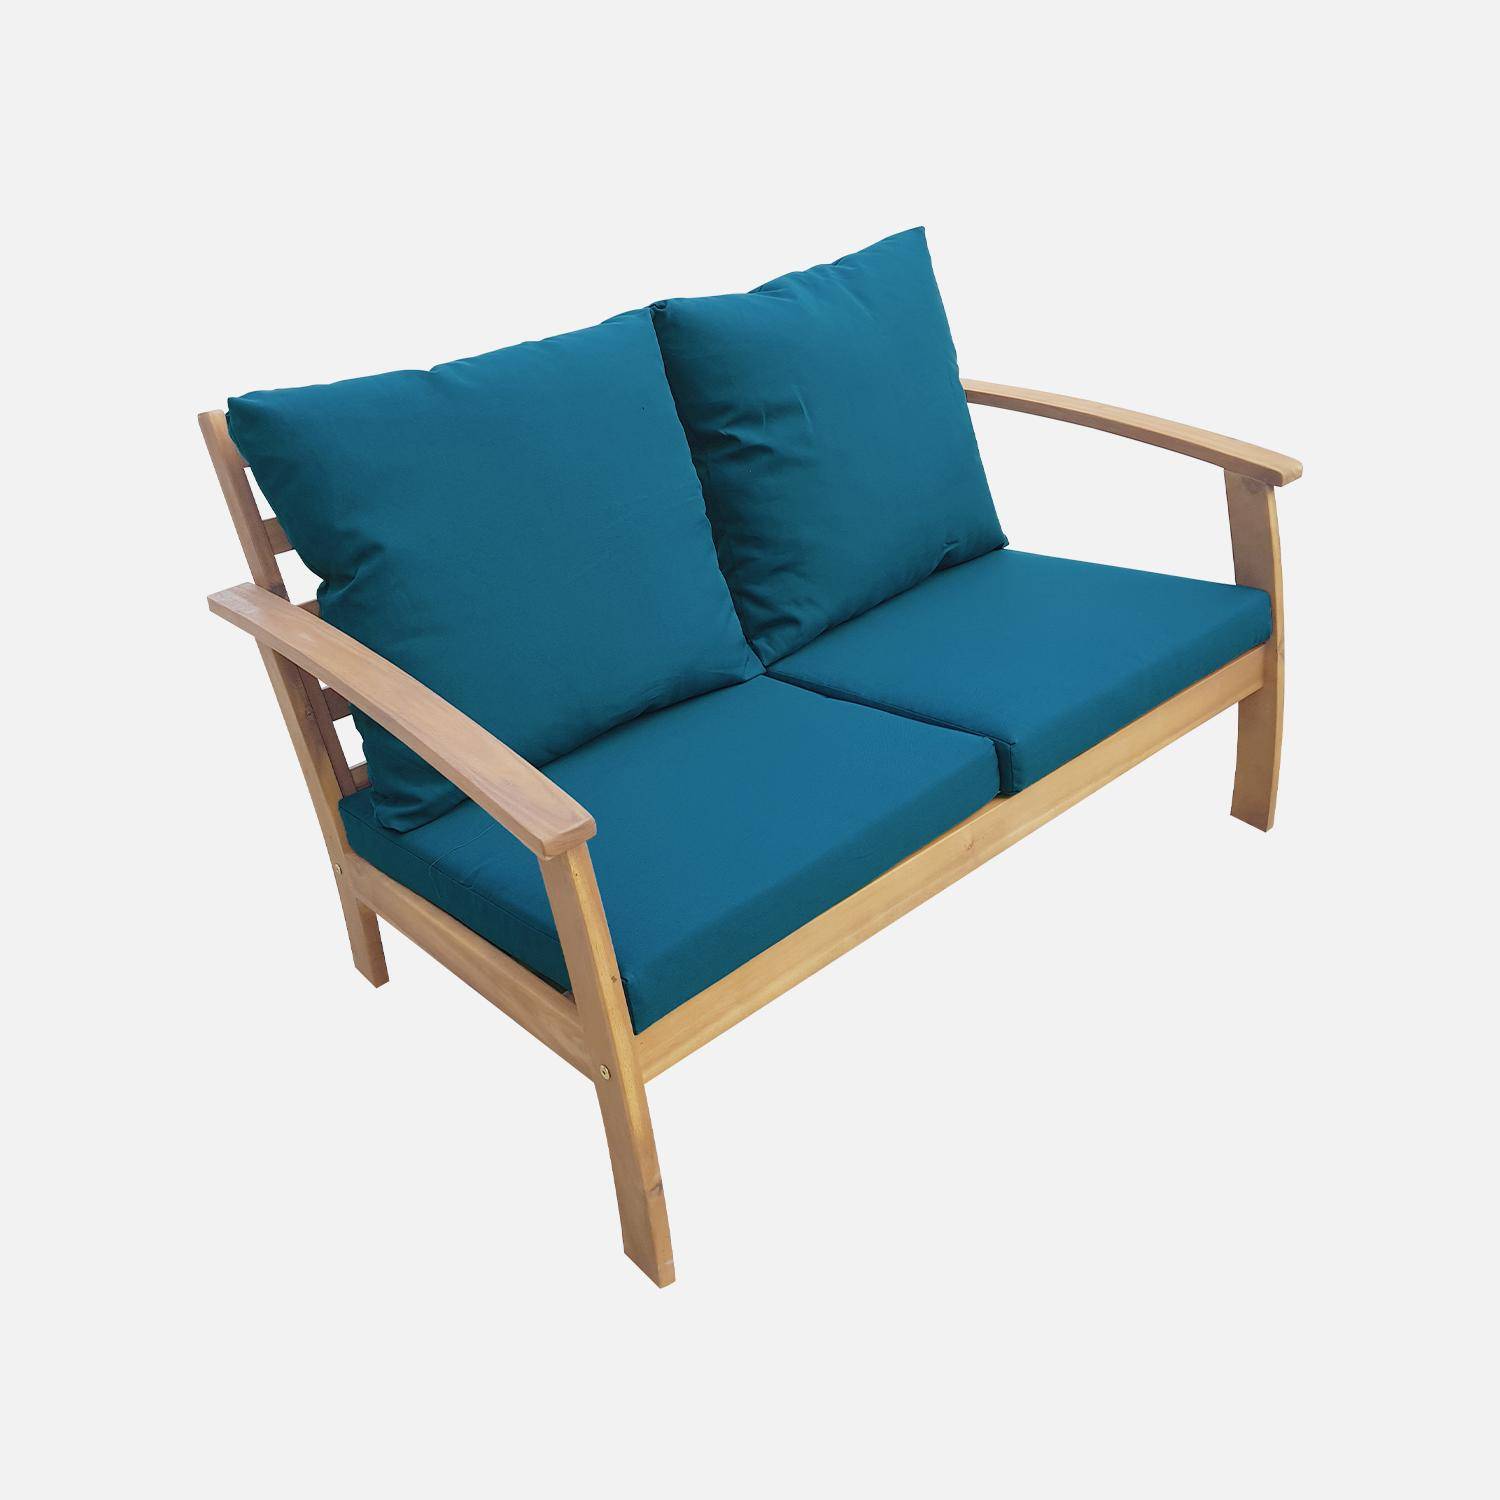 Salon de jardin en bois 4 places - Ushuaïa - Coussins bleu canard, canapé, fauteuils et table basse en acacia, design Photo3